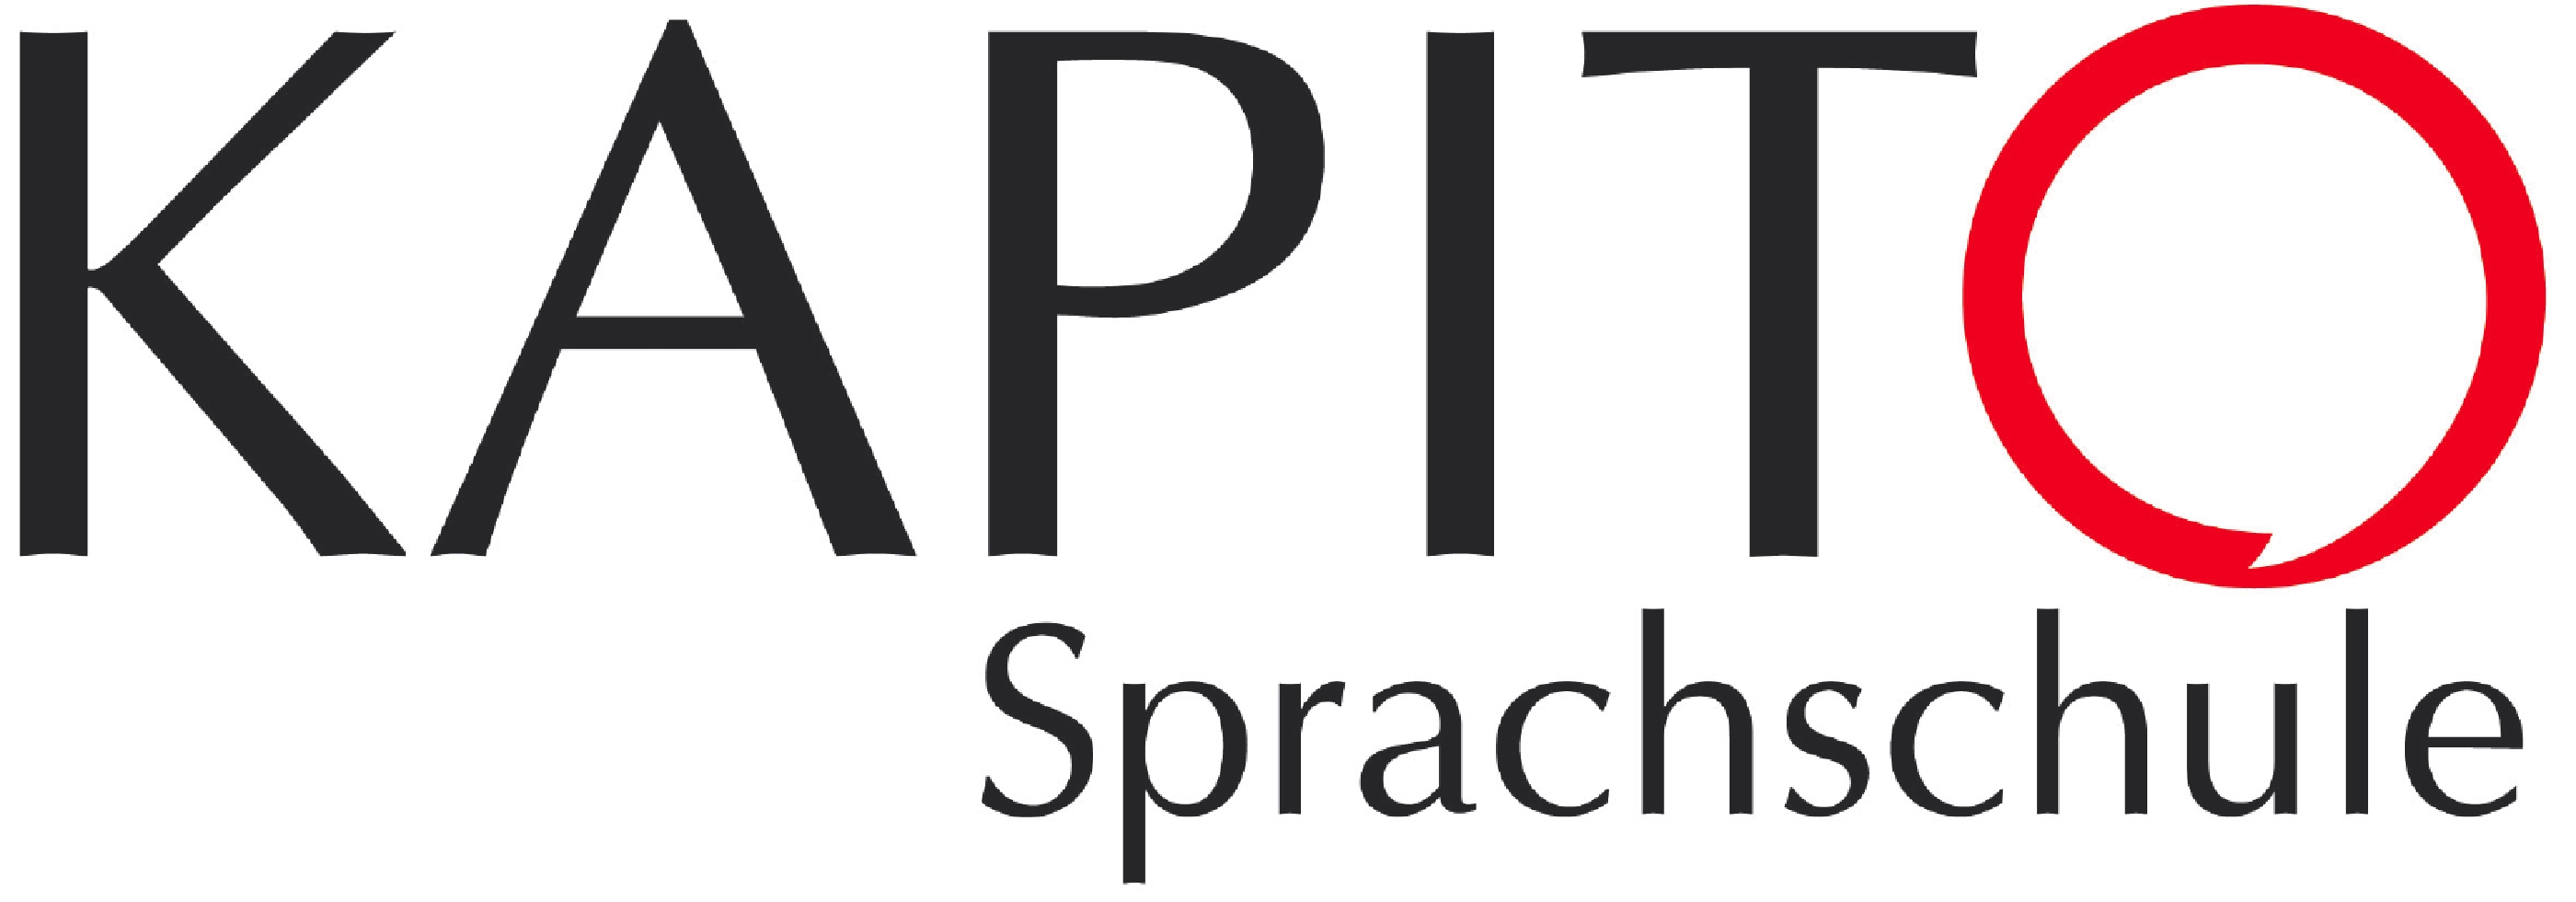 Bild 5 Sprachschule Kapito GmbH in Münster